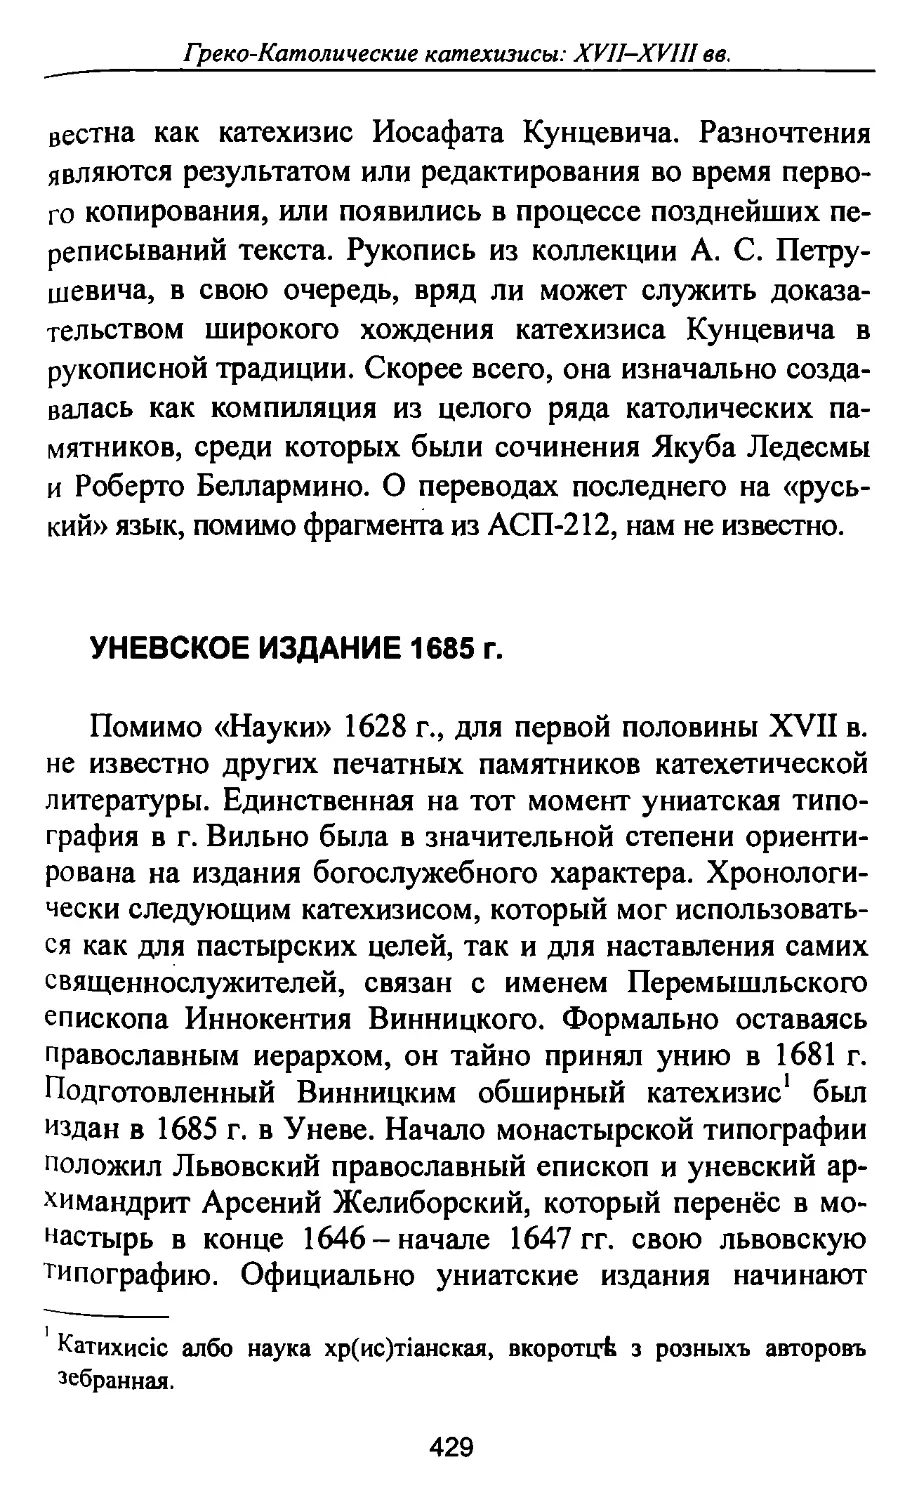 Уневское издание 1685 г.